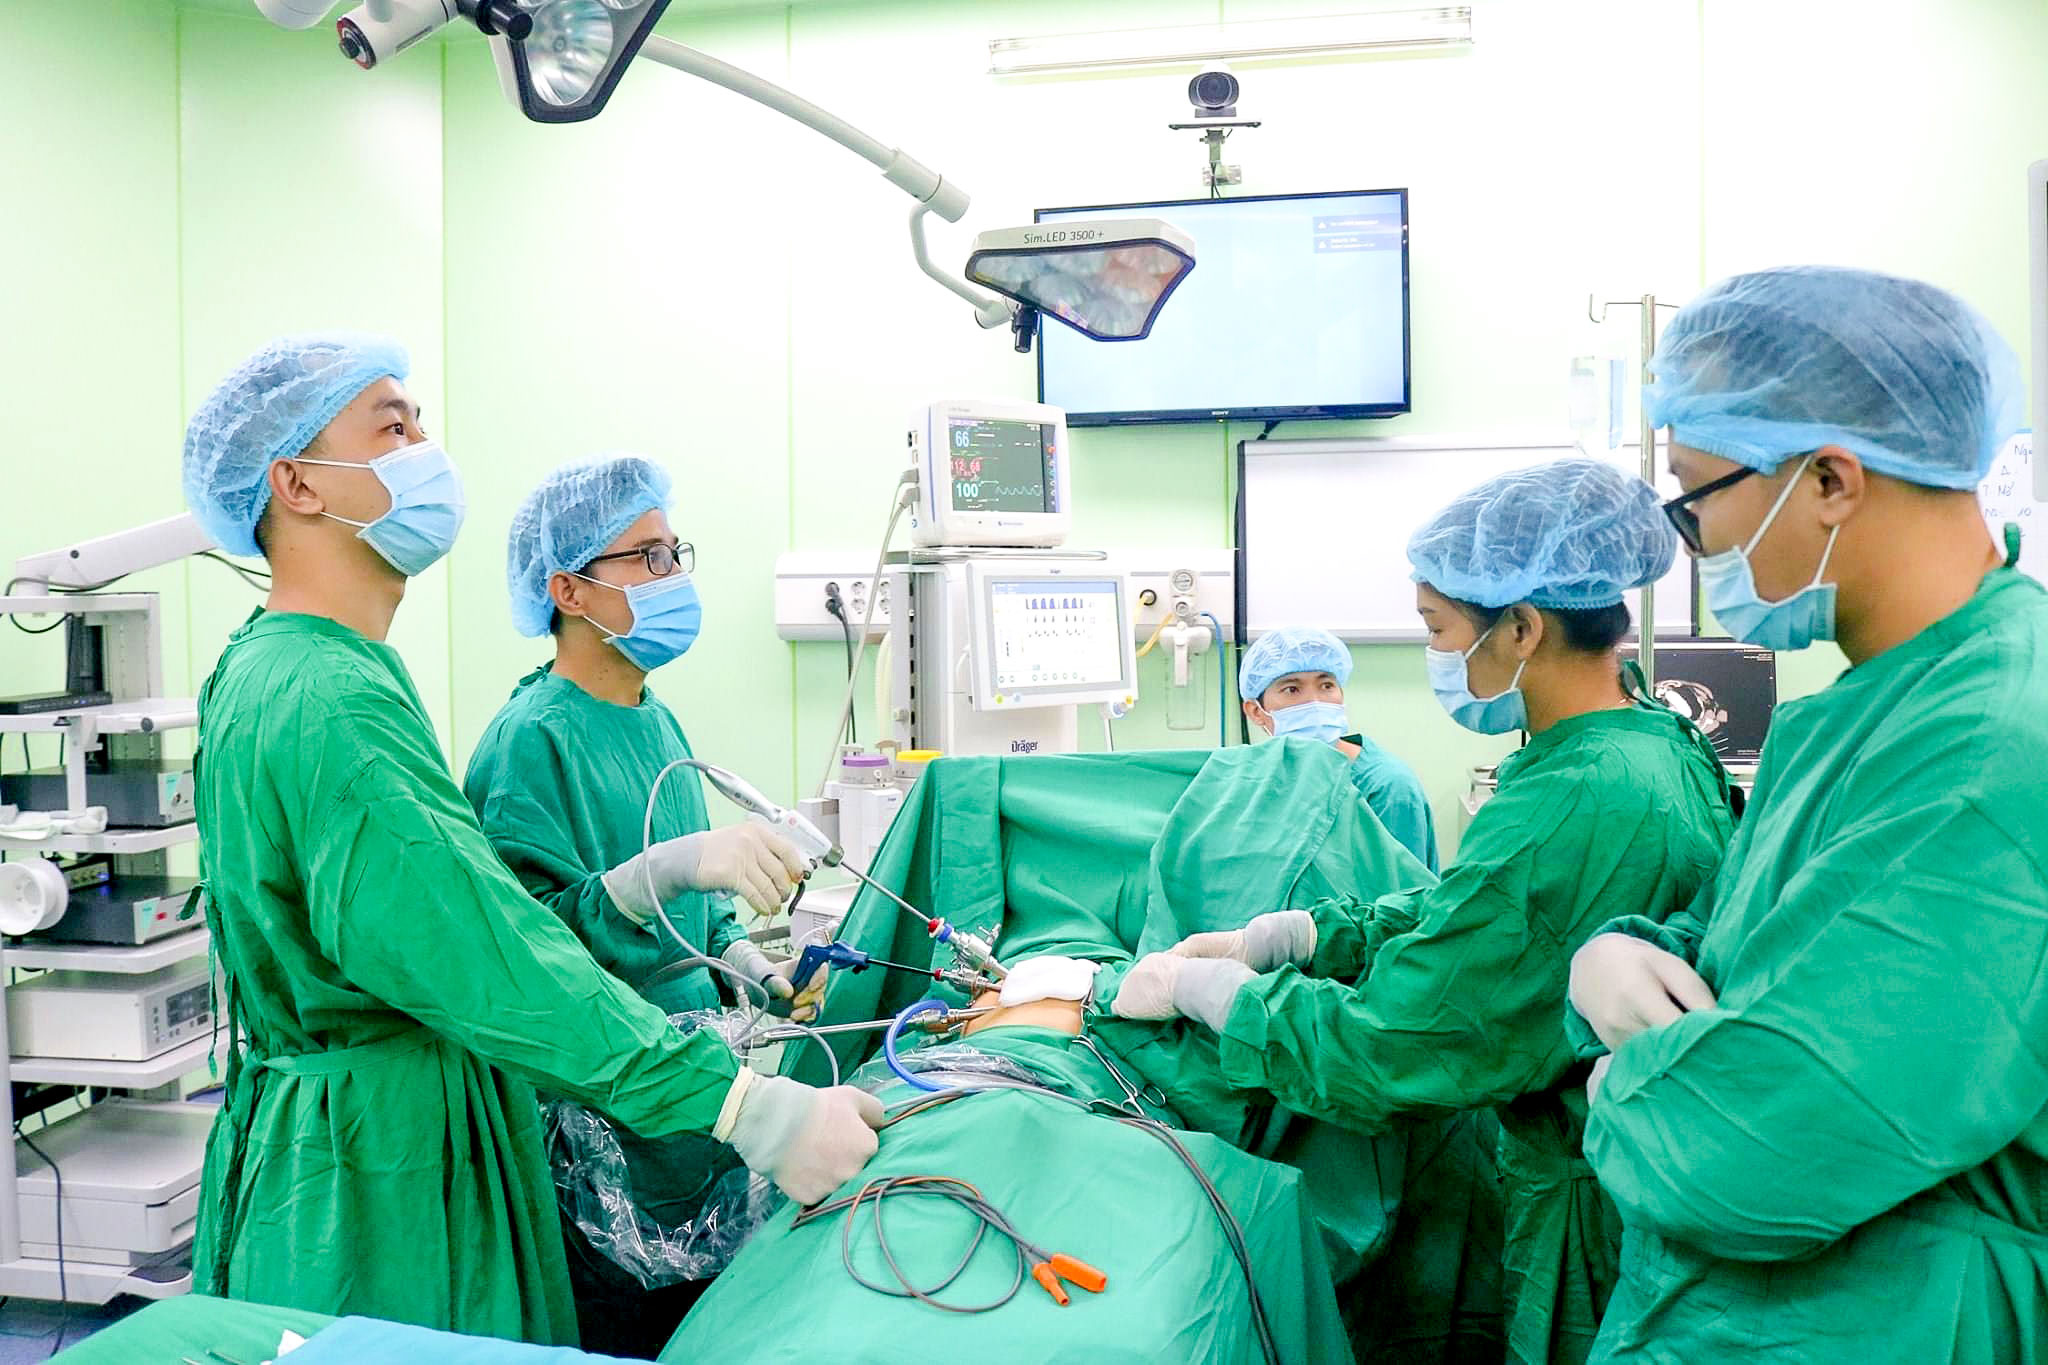 Phẫu thuật nội soi lồng ngực cắt u nang trung thất lớn chèn ép khí quản.